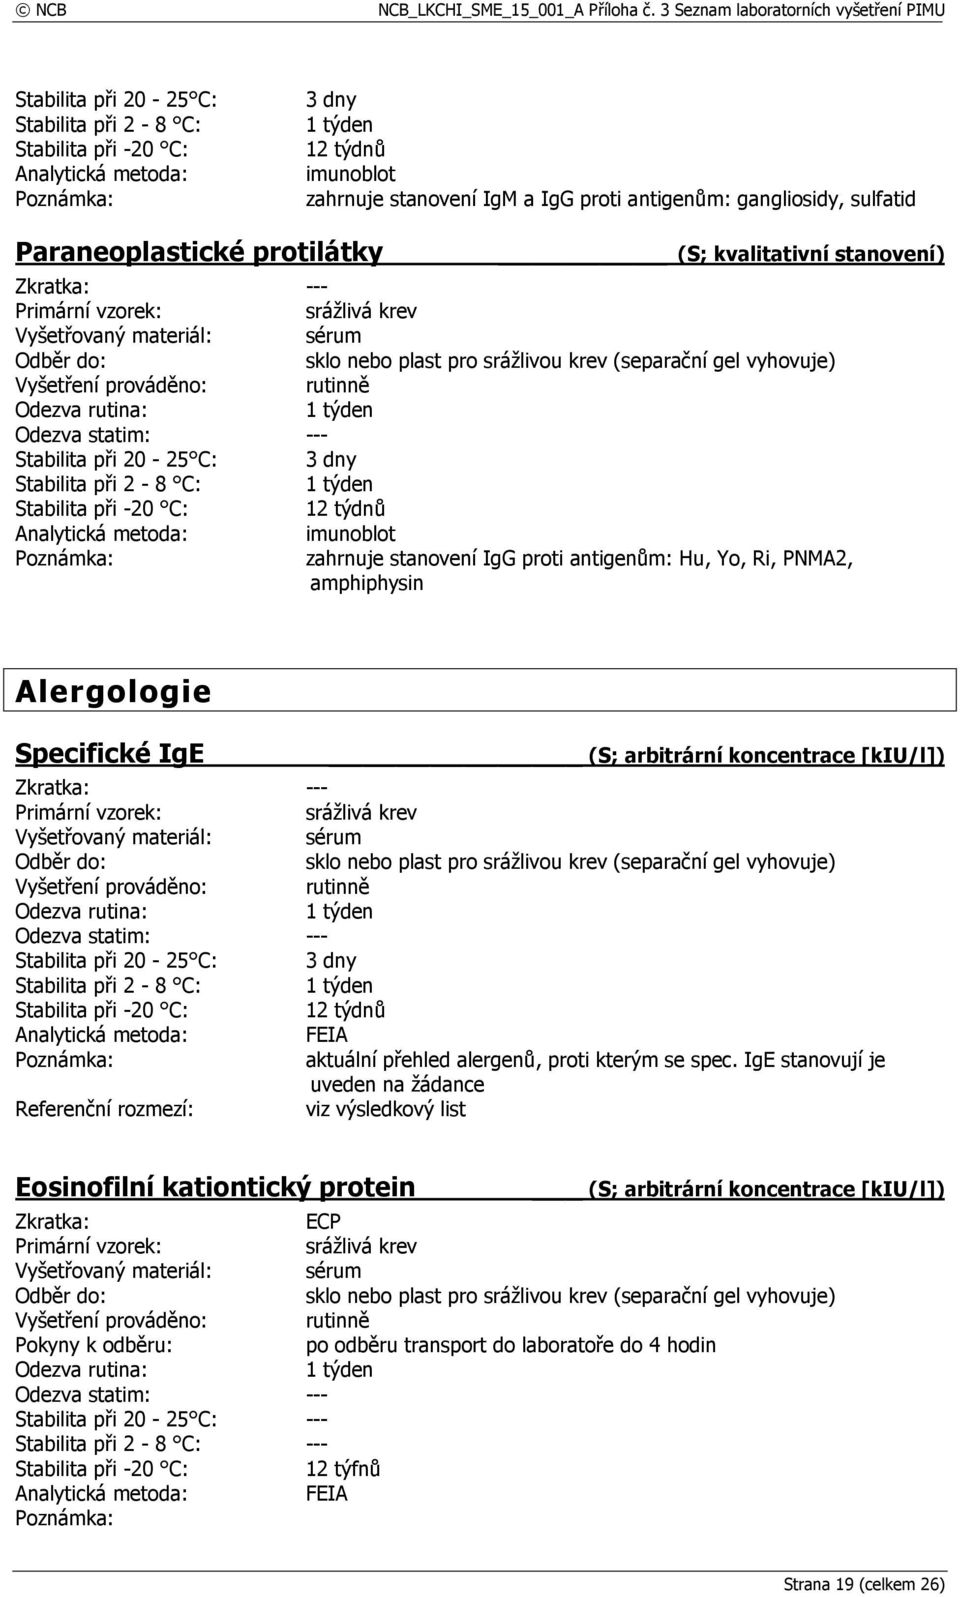 (S; arbitrární koncentrace [kiu/l]) Analytická metoda: FEIA aktuální přehled alergenů, proti kterým se spec.